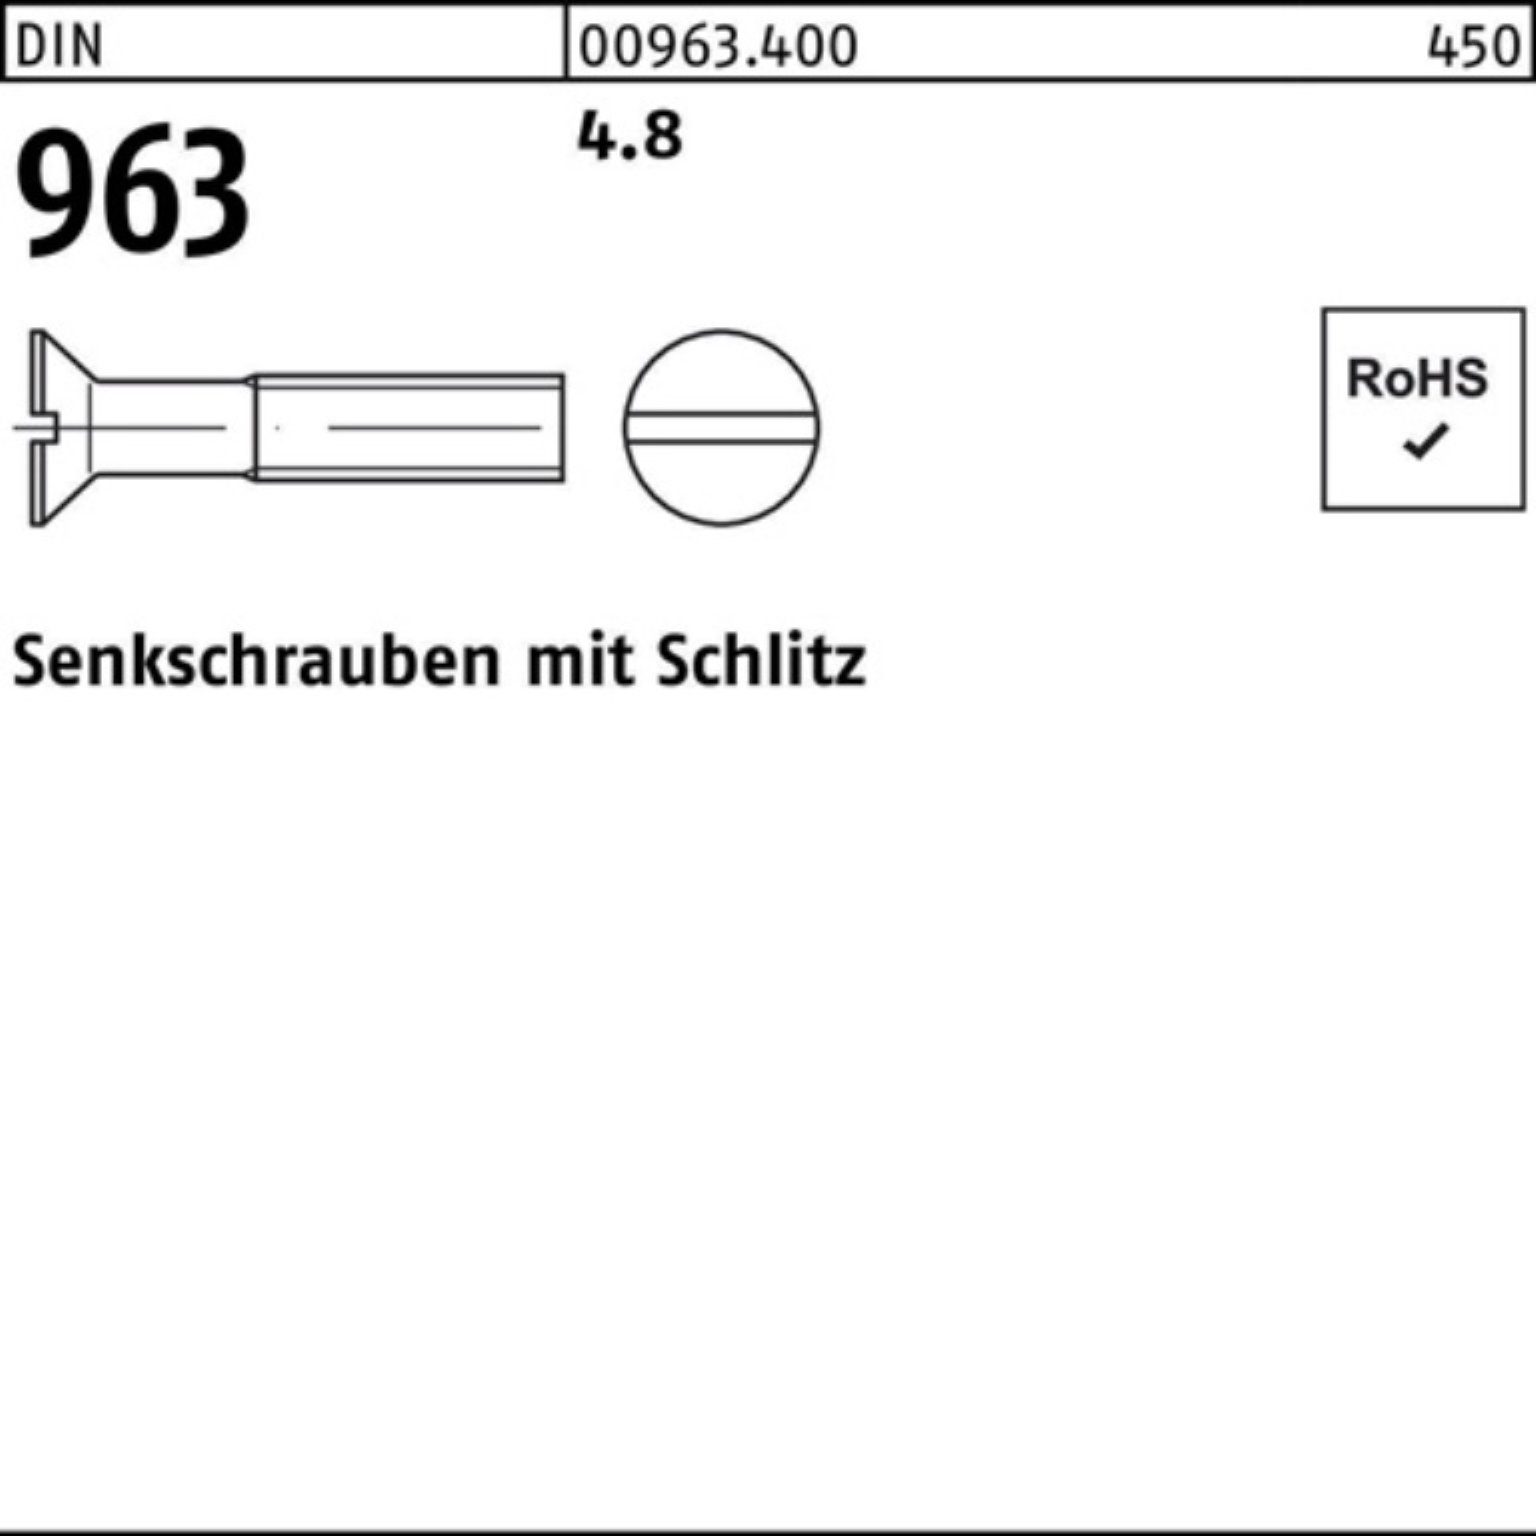 Reyher Senkschraube 100er Pack Senkschraube Stück DIN Schlitz 4.8 DIN 96 M10x 963 100 100